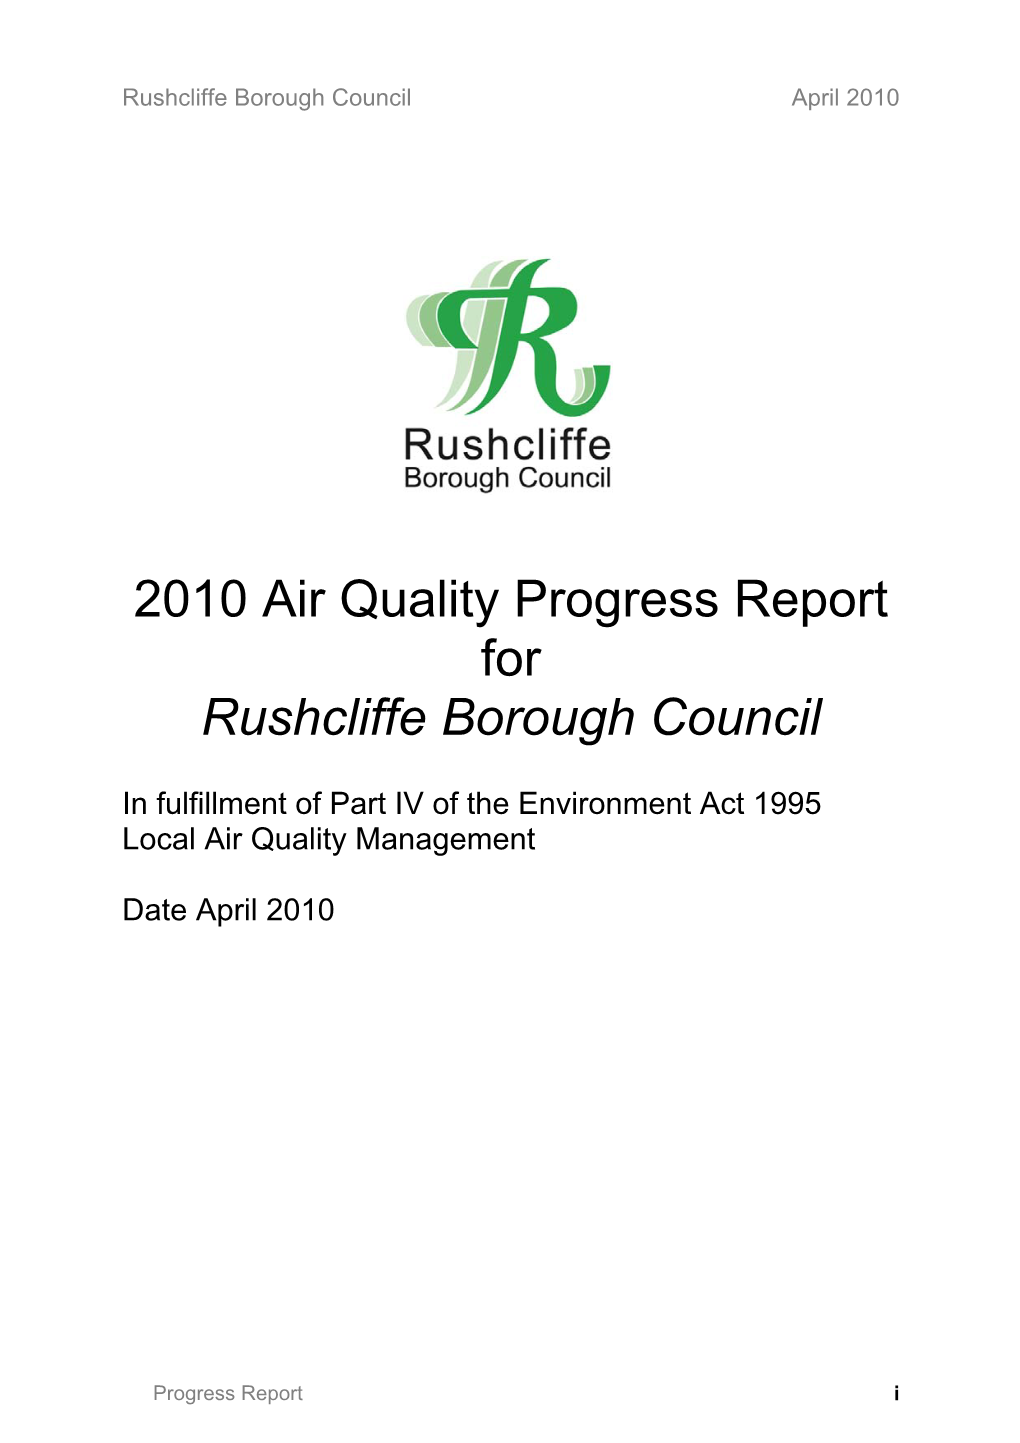 Air Quality Progress Report April 2010